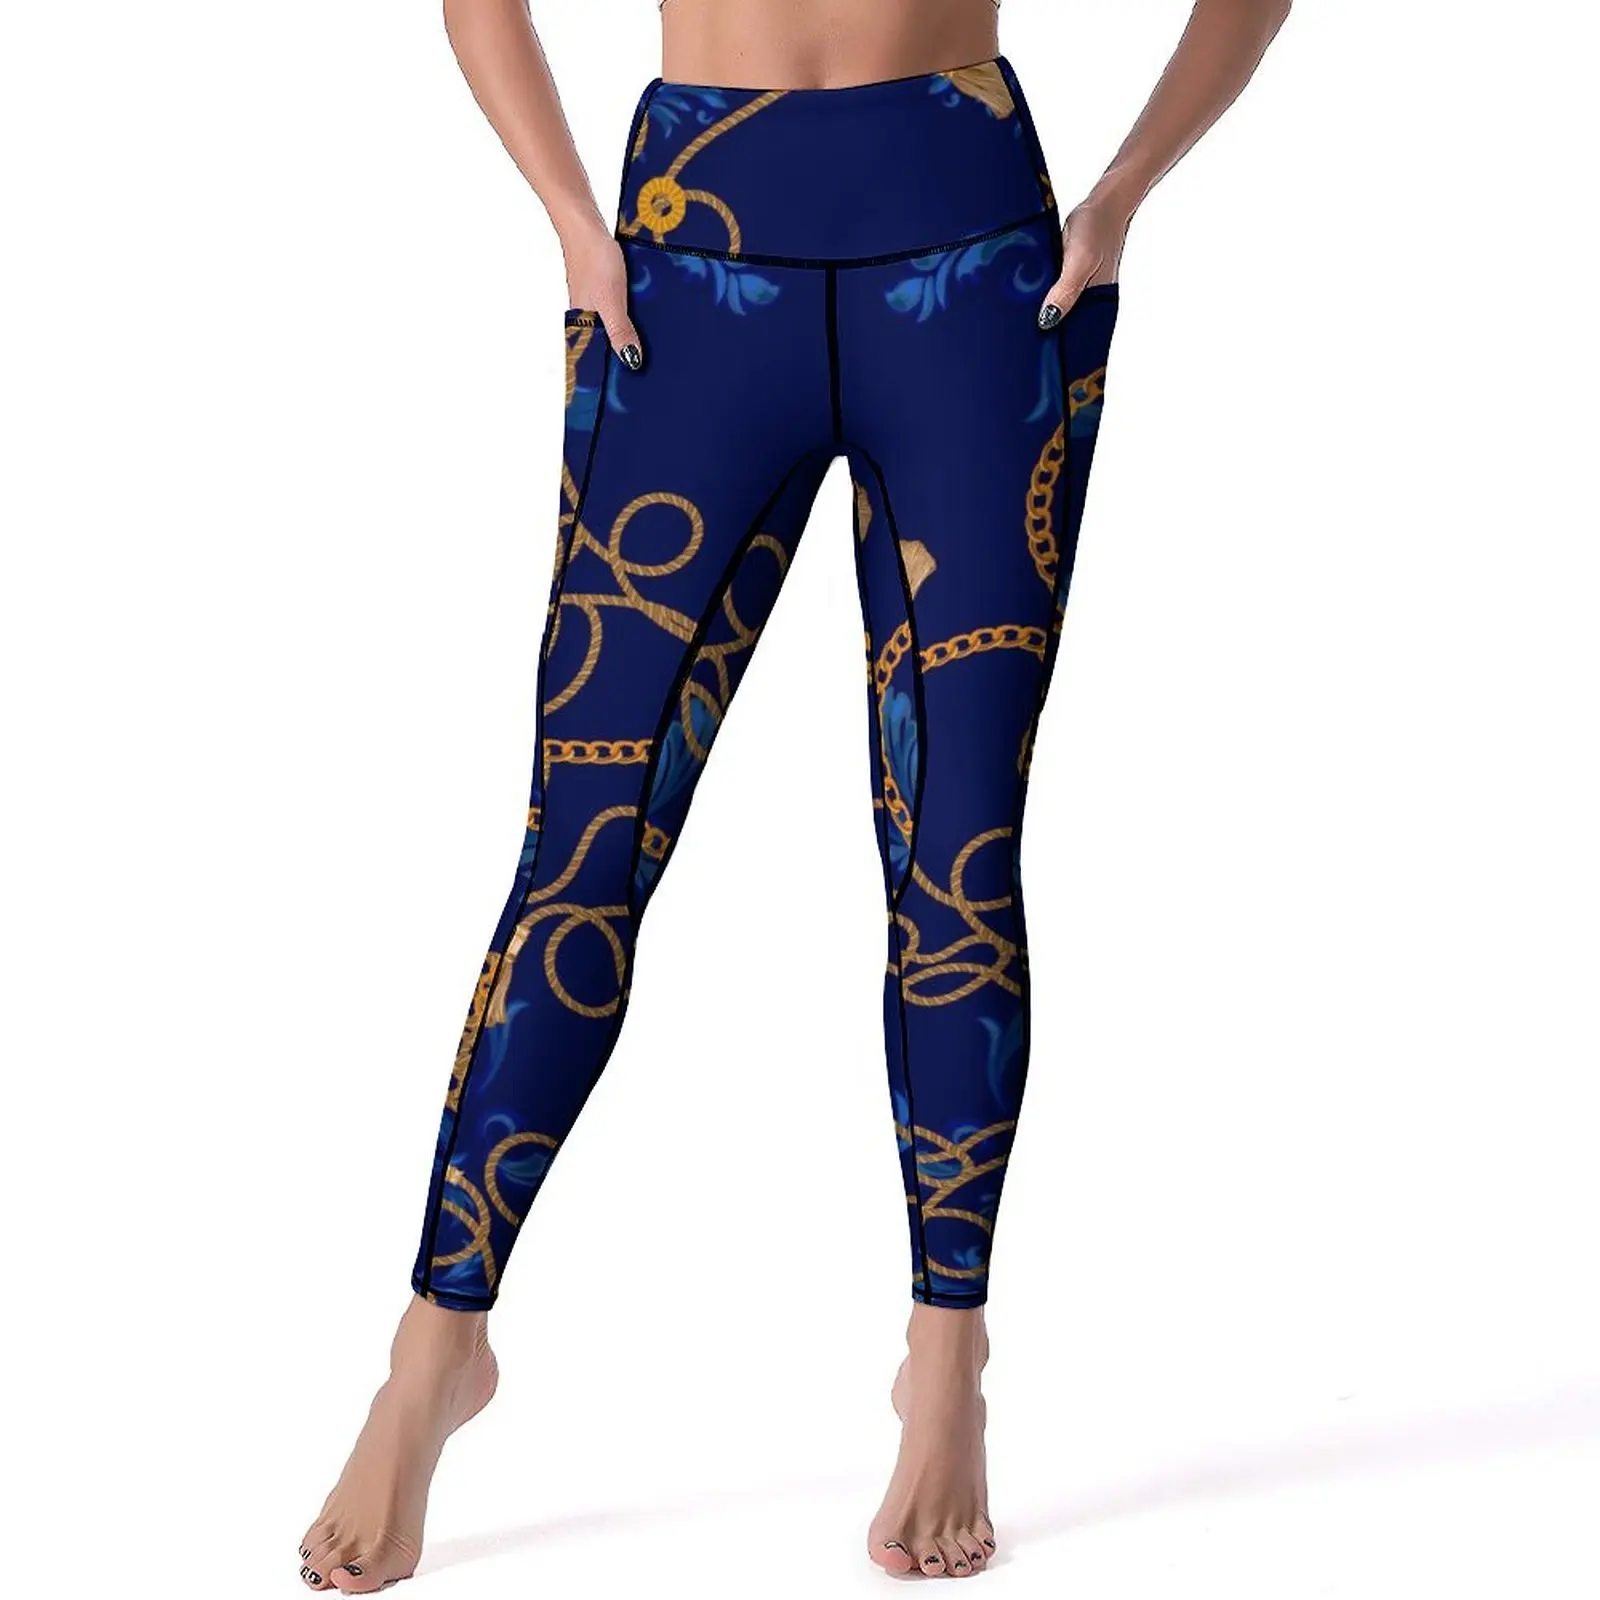 IStock - 1211859079 Yoga Pantolon Kadın Tayt Push Up Zarif Yoga Legging Sıkı Desen Koşu Spor Tayt